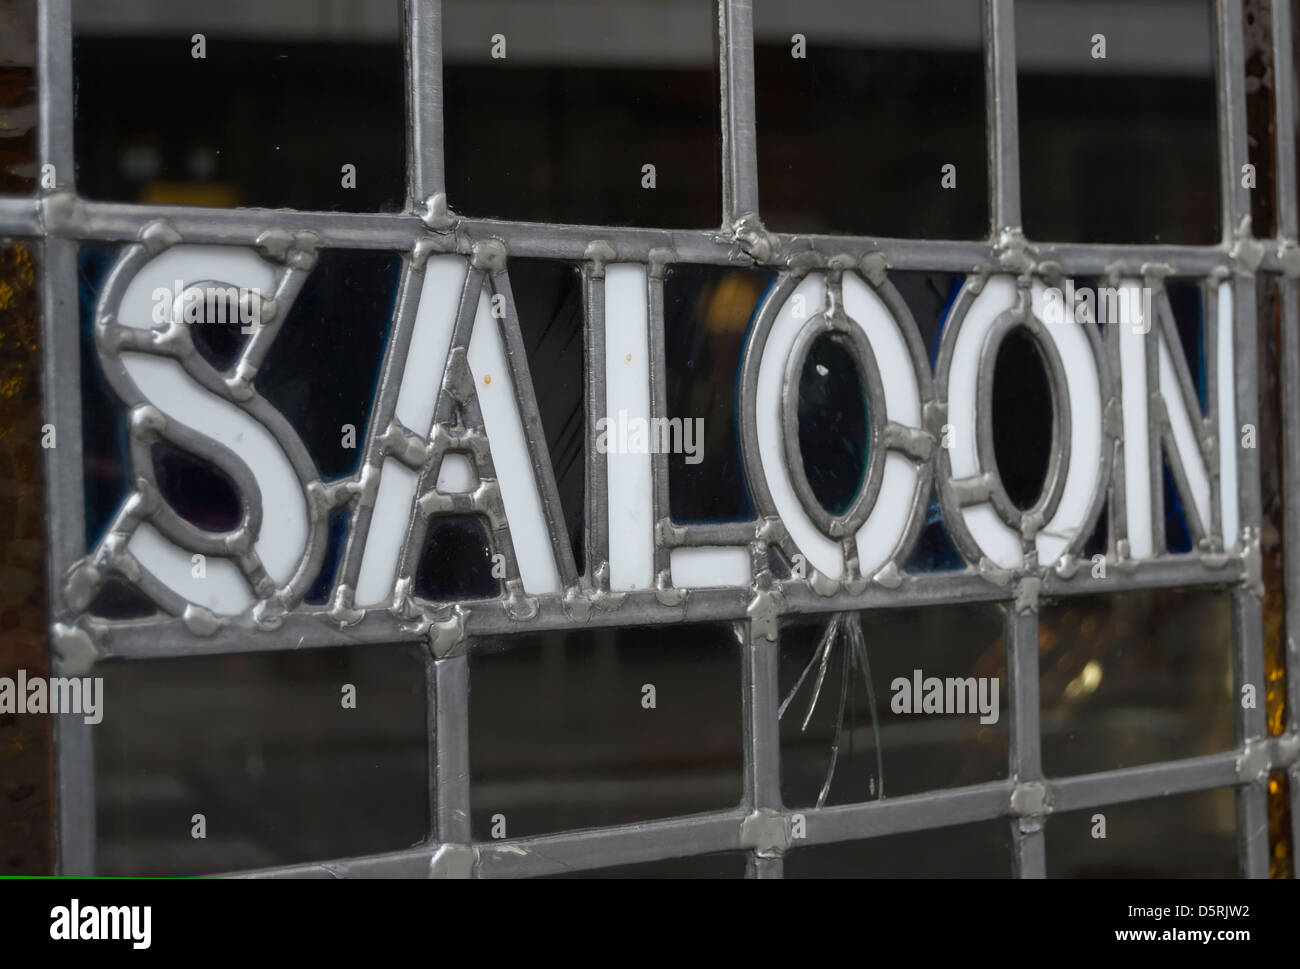 das Wort Salon eingelassen ein verbleites Lichtfenster auf eine Tür, an der Saloon-Bar von einer Kneipe, Richmond, Surrey, england Stockfoto